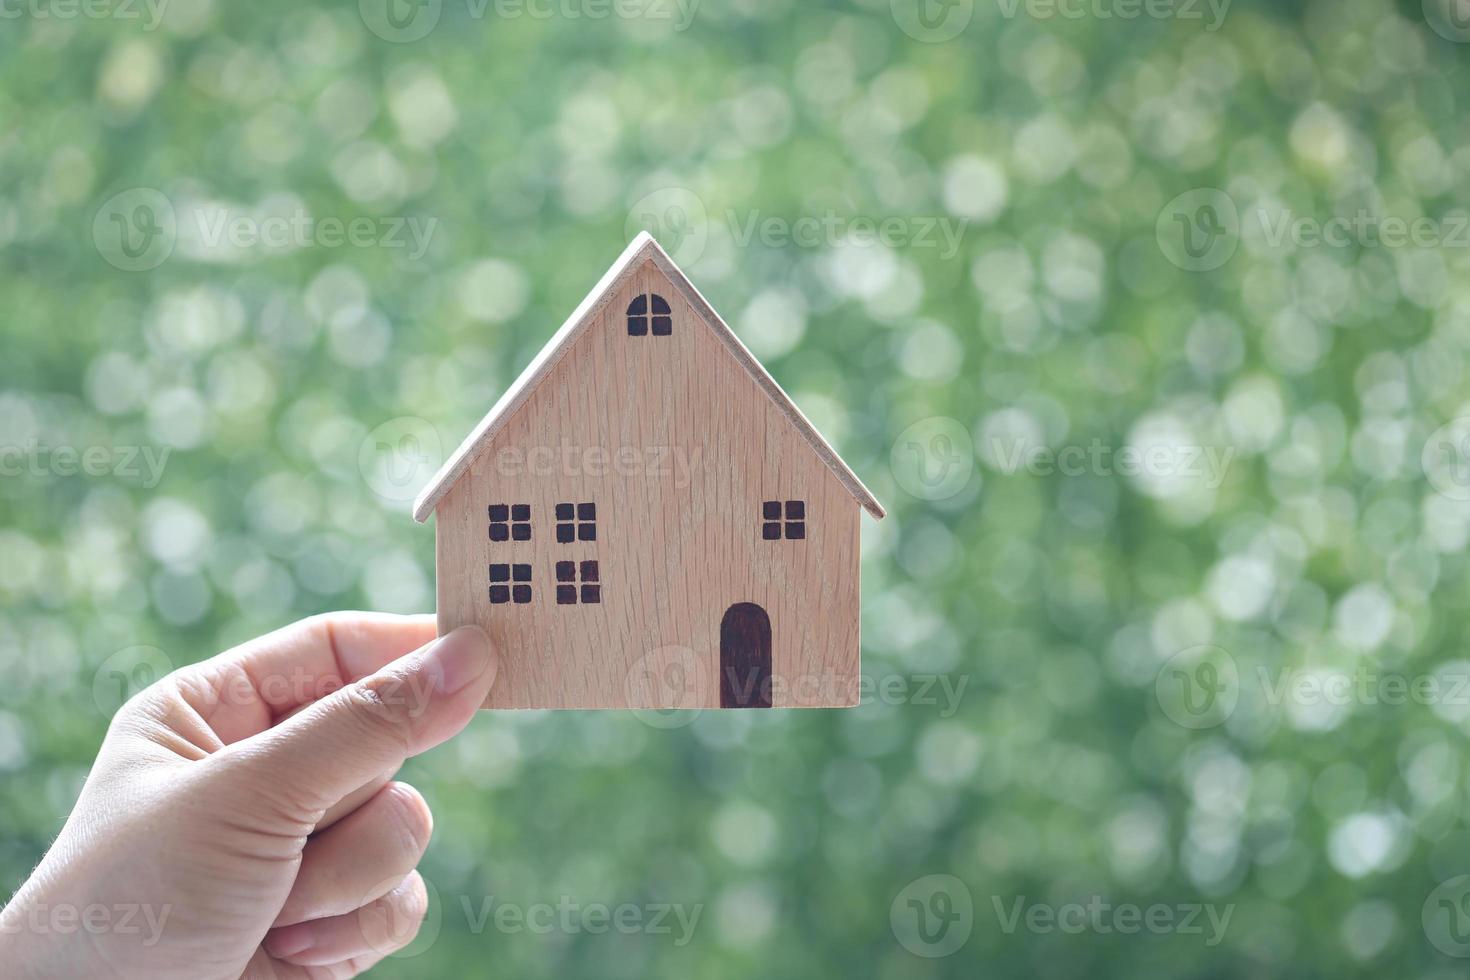 vrouw hand met een model huis op een natuurlijke groene achtergrond, bedrijfsinvesteringen en onroerend goed concept foto